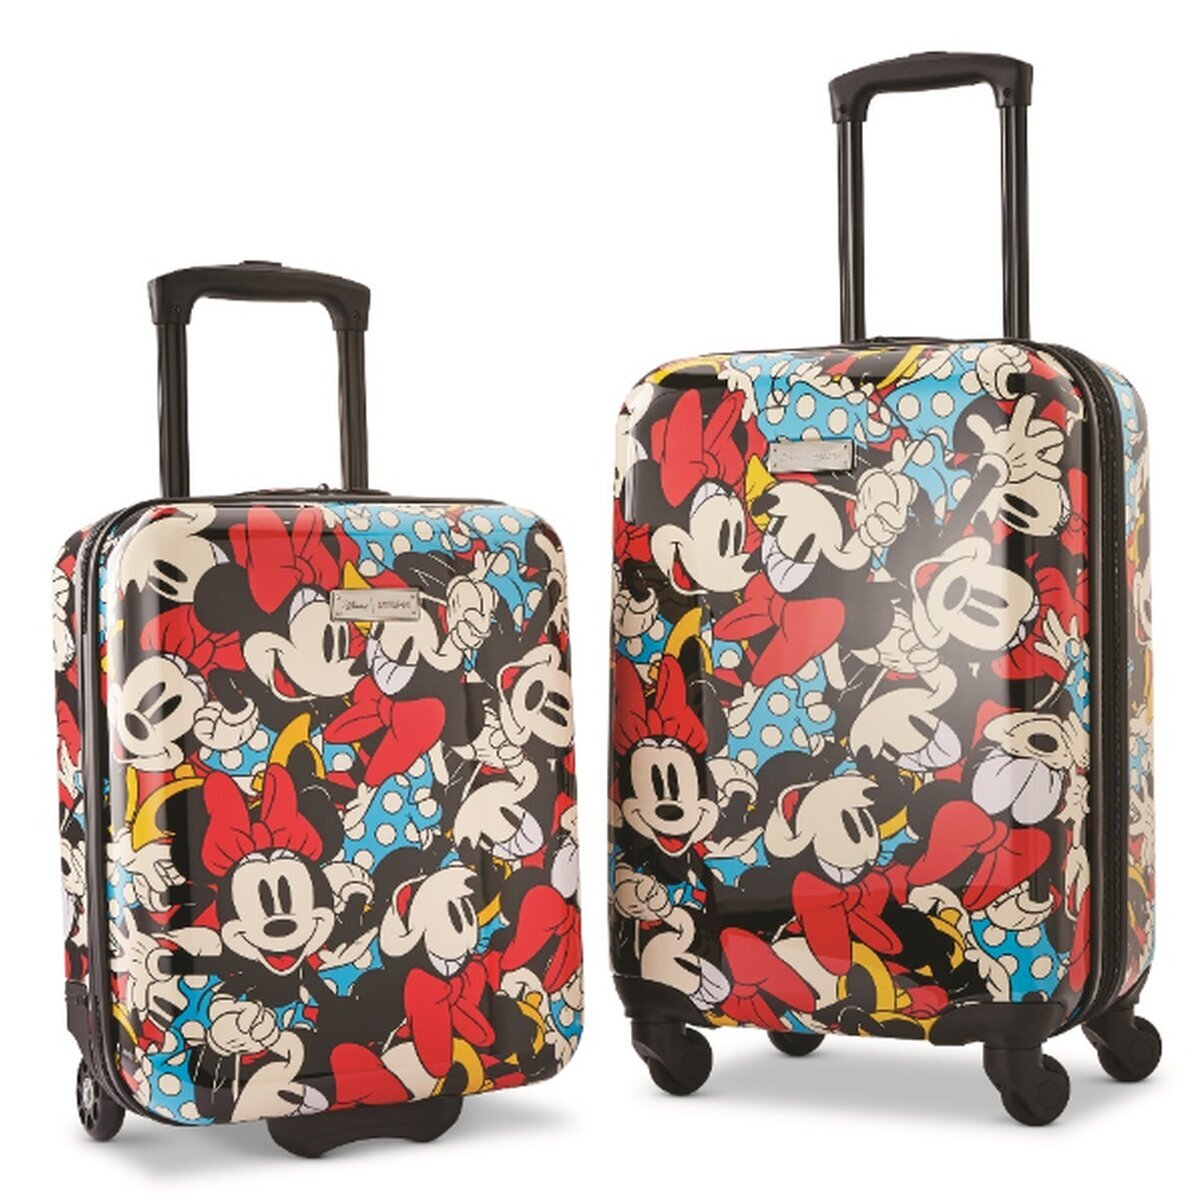 アメリカンツーリスター ディズニー スーツケース 2個セット | Costco ...